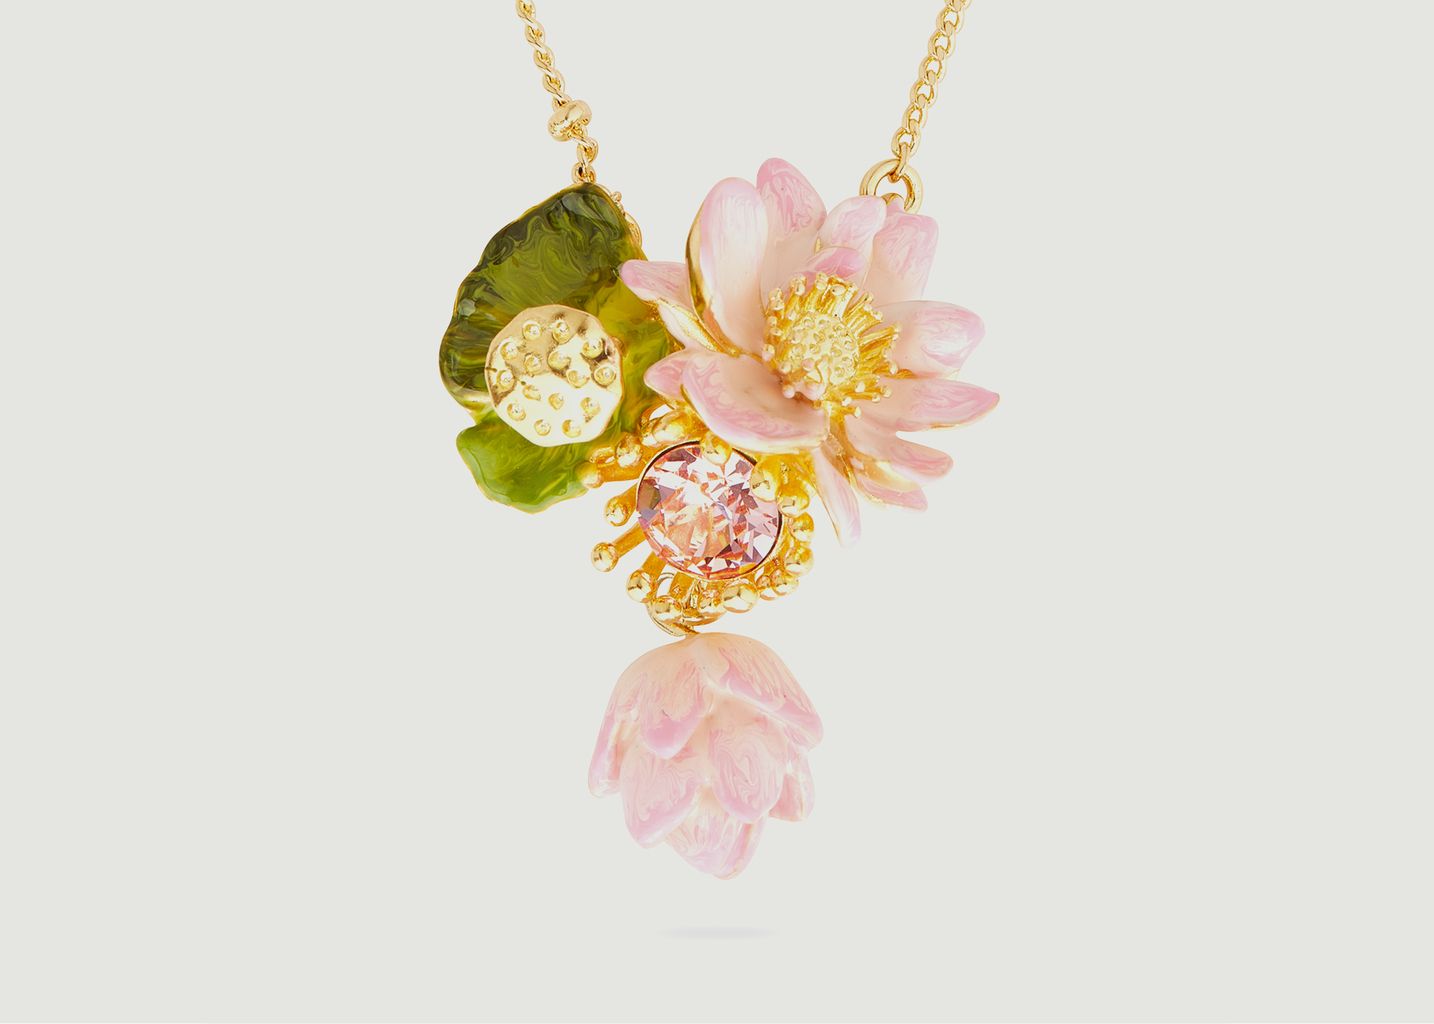 Fine necklace with lotus flower pendant - Les Néréides